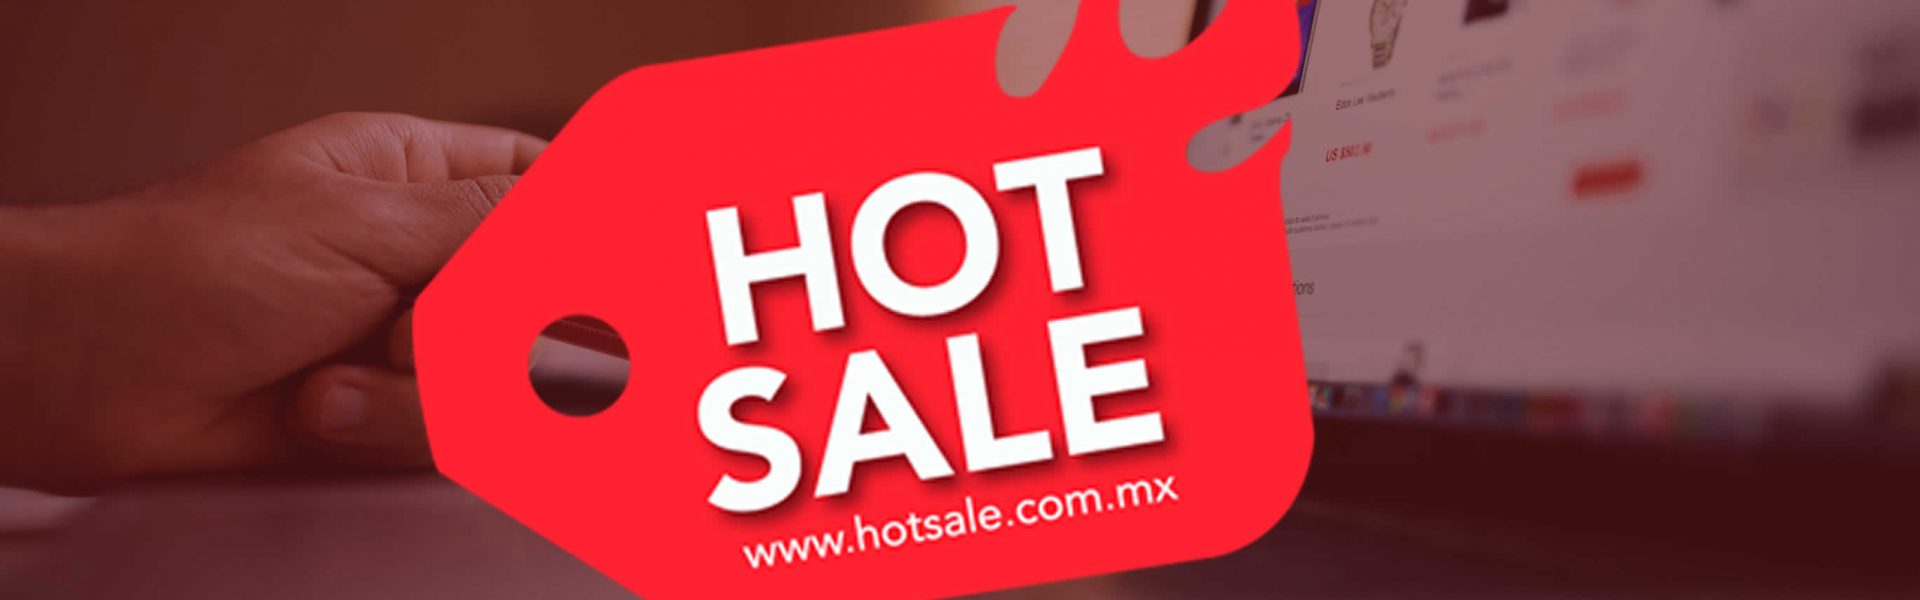 Hot Sale registra un incremento de ventas del 29% contra el año pasado